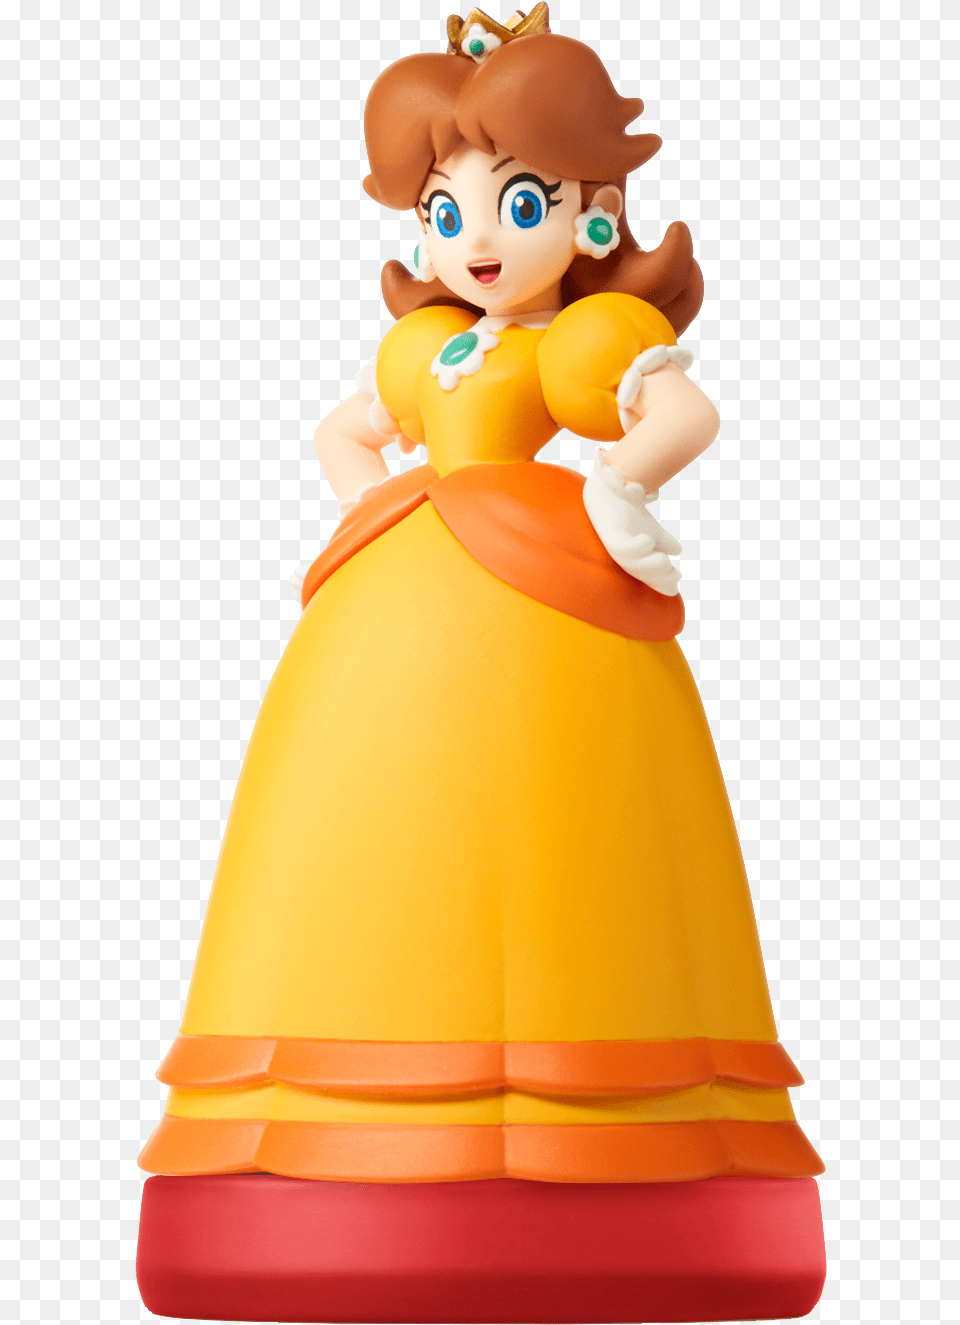 Daisy Super Mario Amiibo Daisy Amiibo Super Mario, Doll, Toy, Face, Head Png